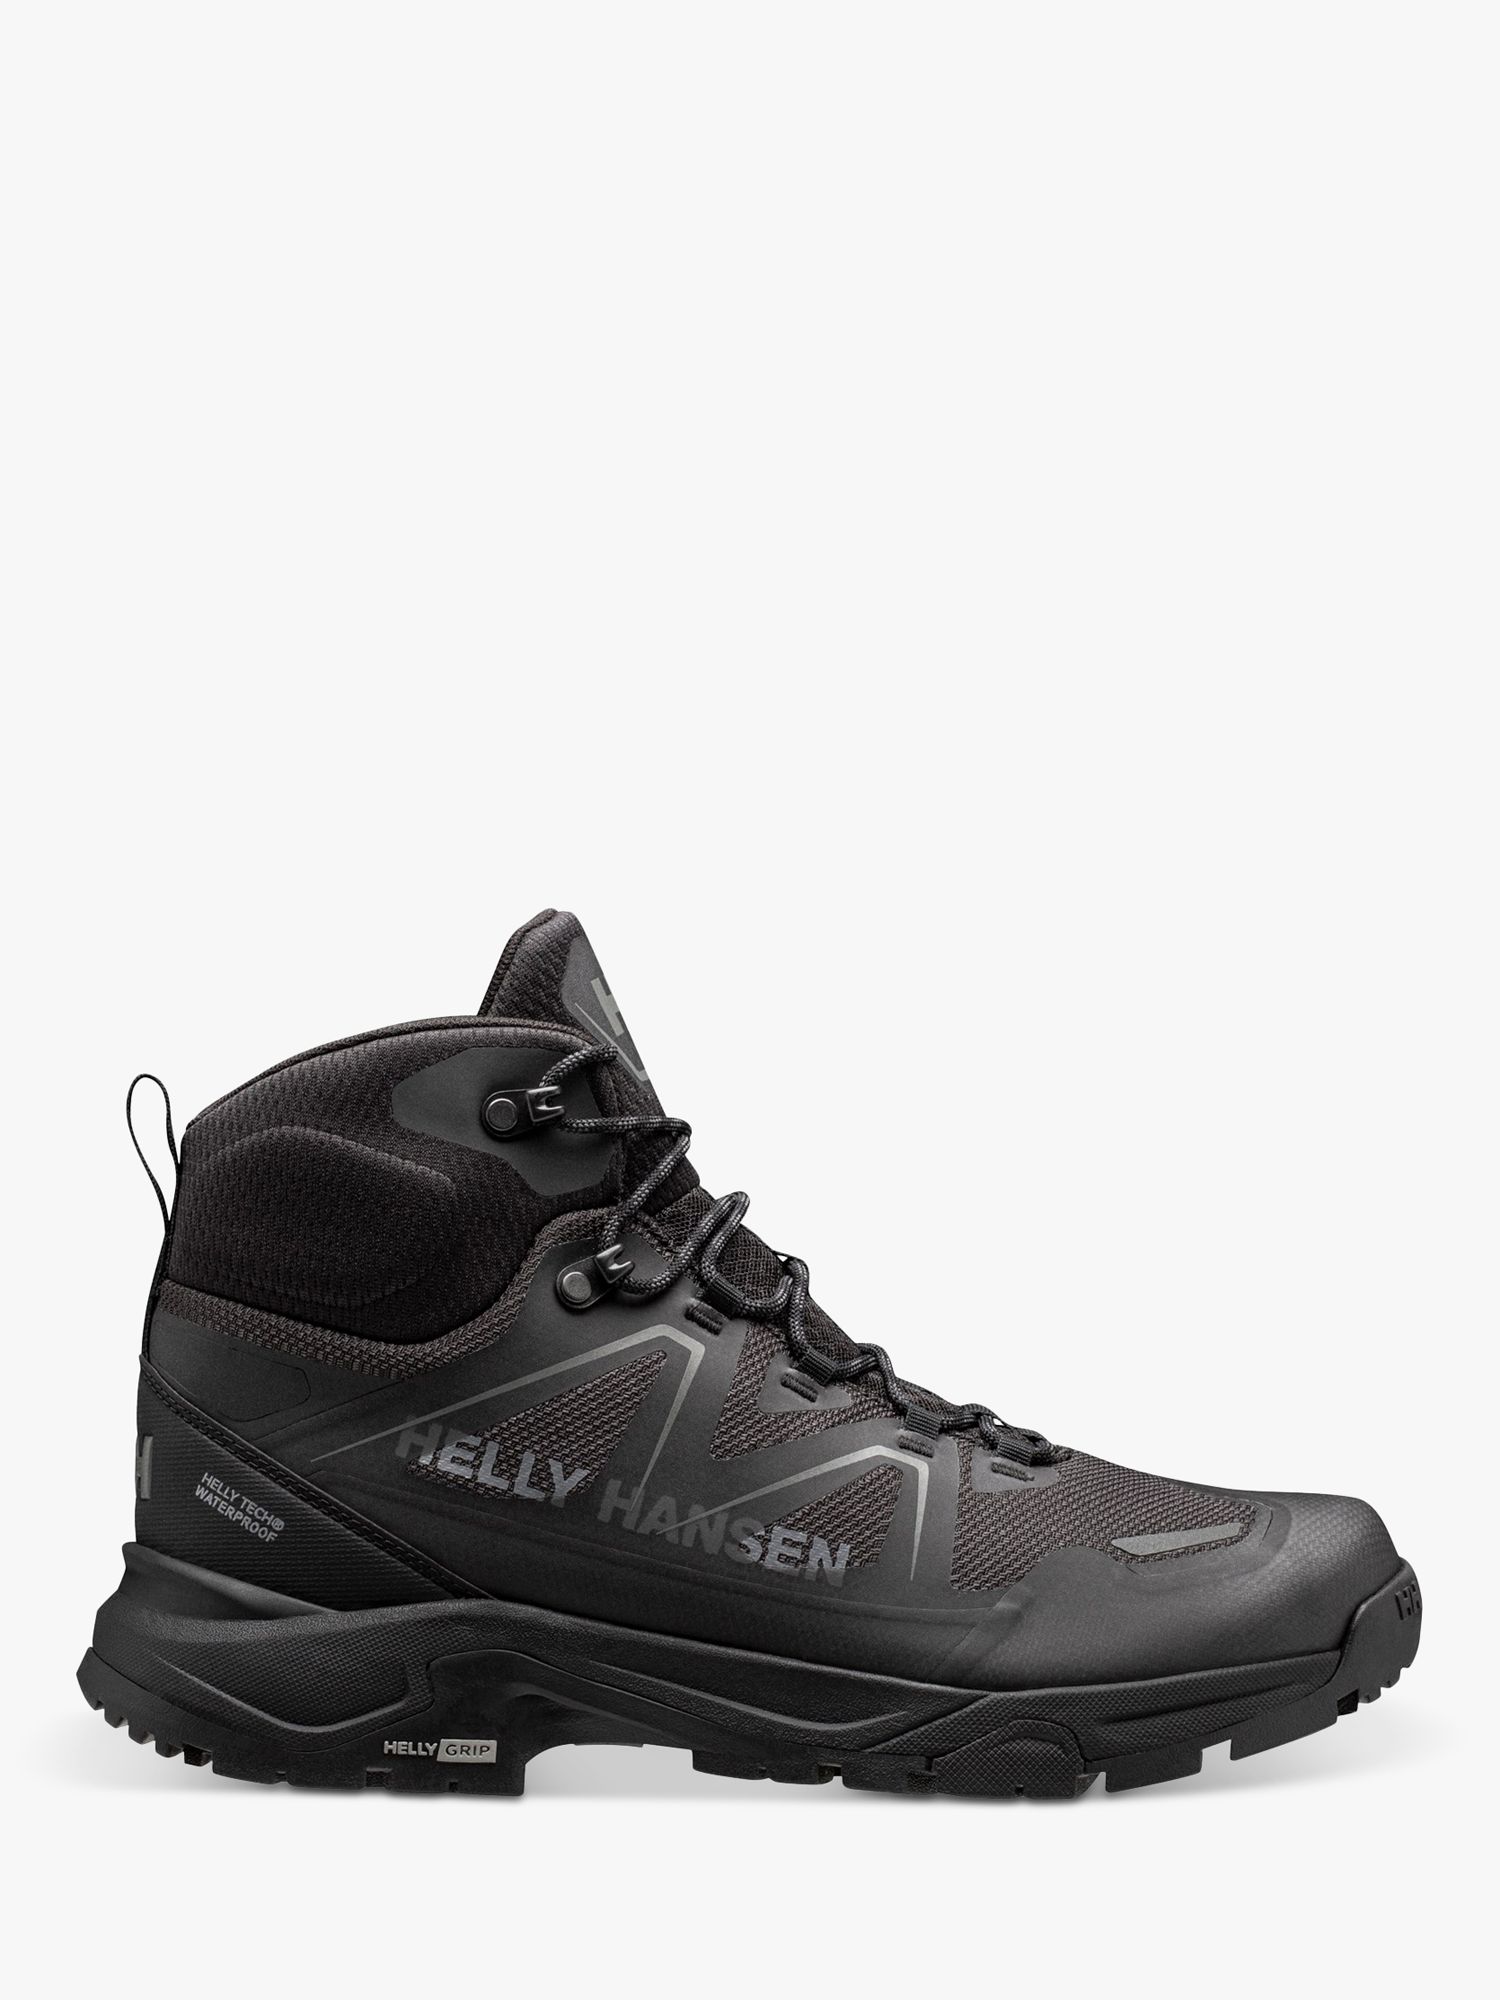 Helly Hansen Cascade Waterproof Lace Up Walking Boots, Black, 7